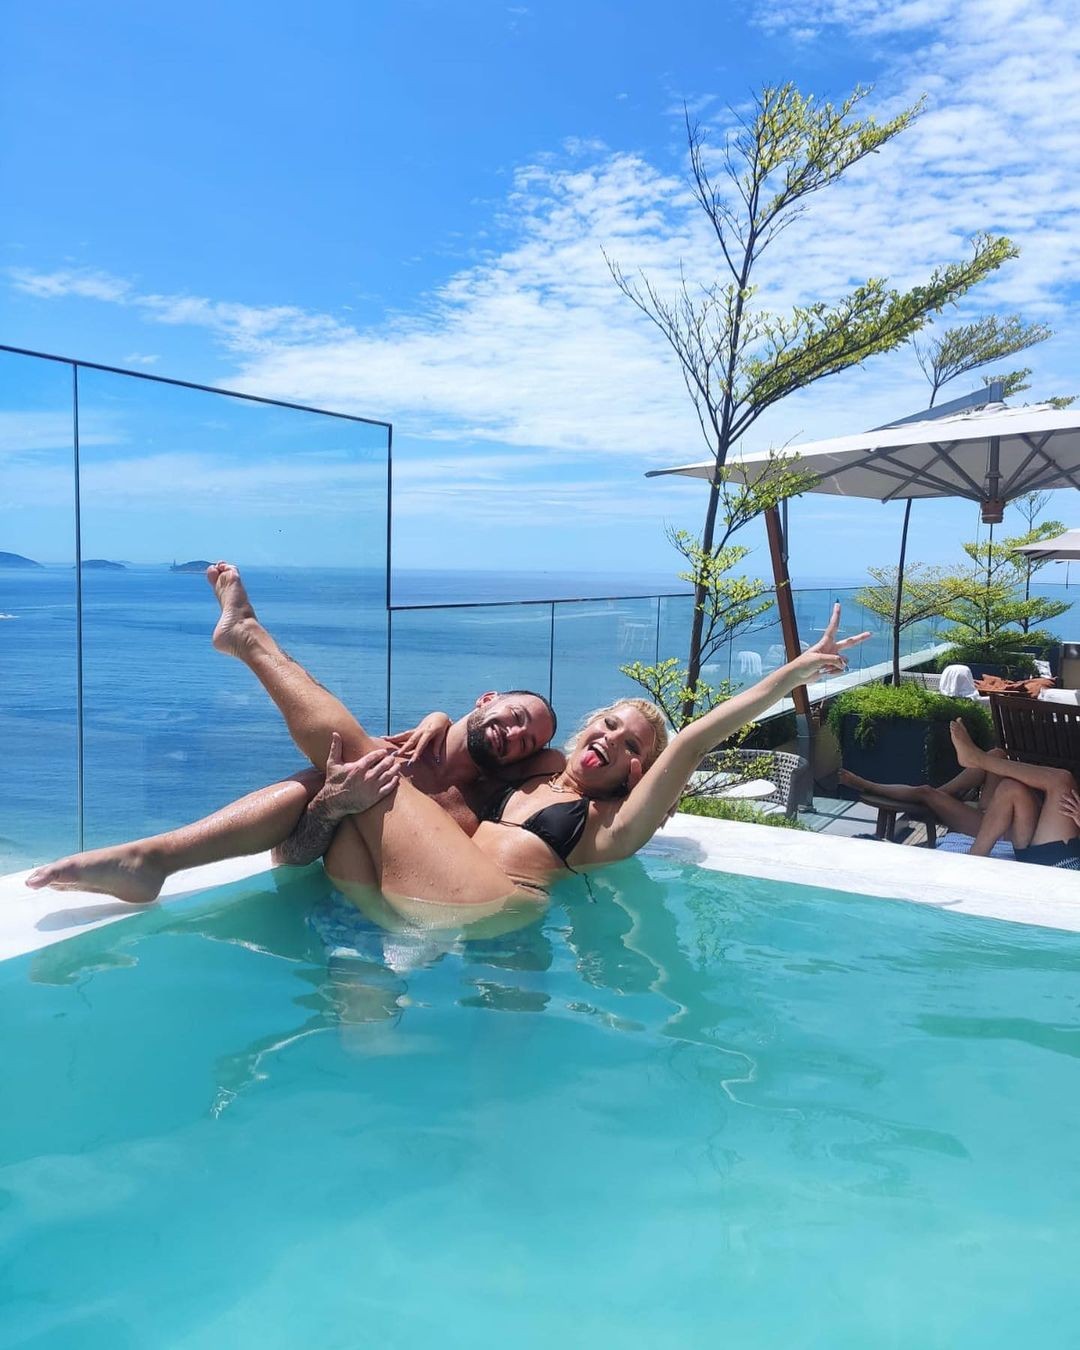 Diego Hypolito sobre manhã de sol na piscina: A vida é feita de momentos felizes (Foto: Reprodução Instagram)